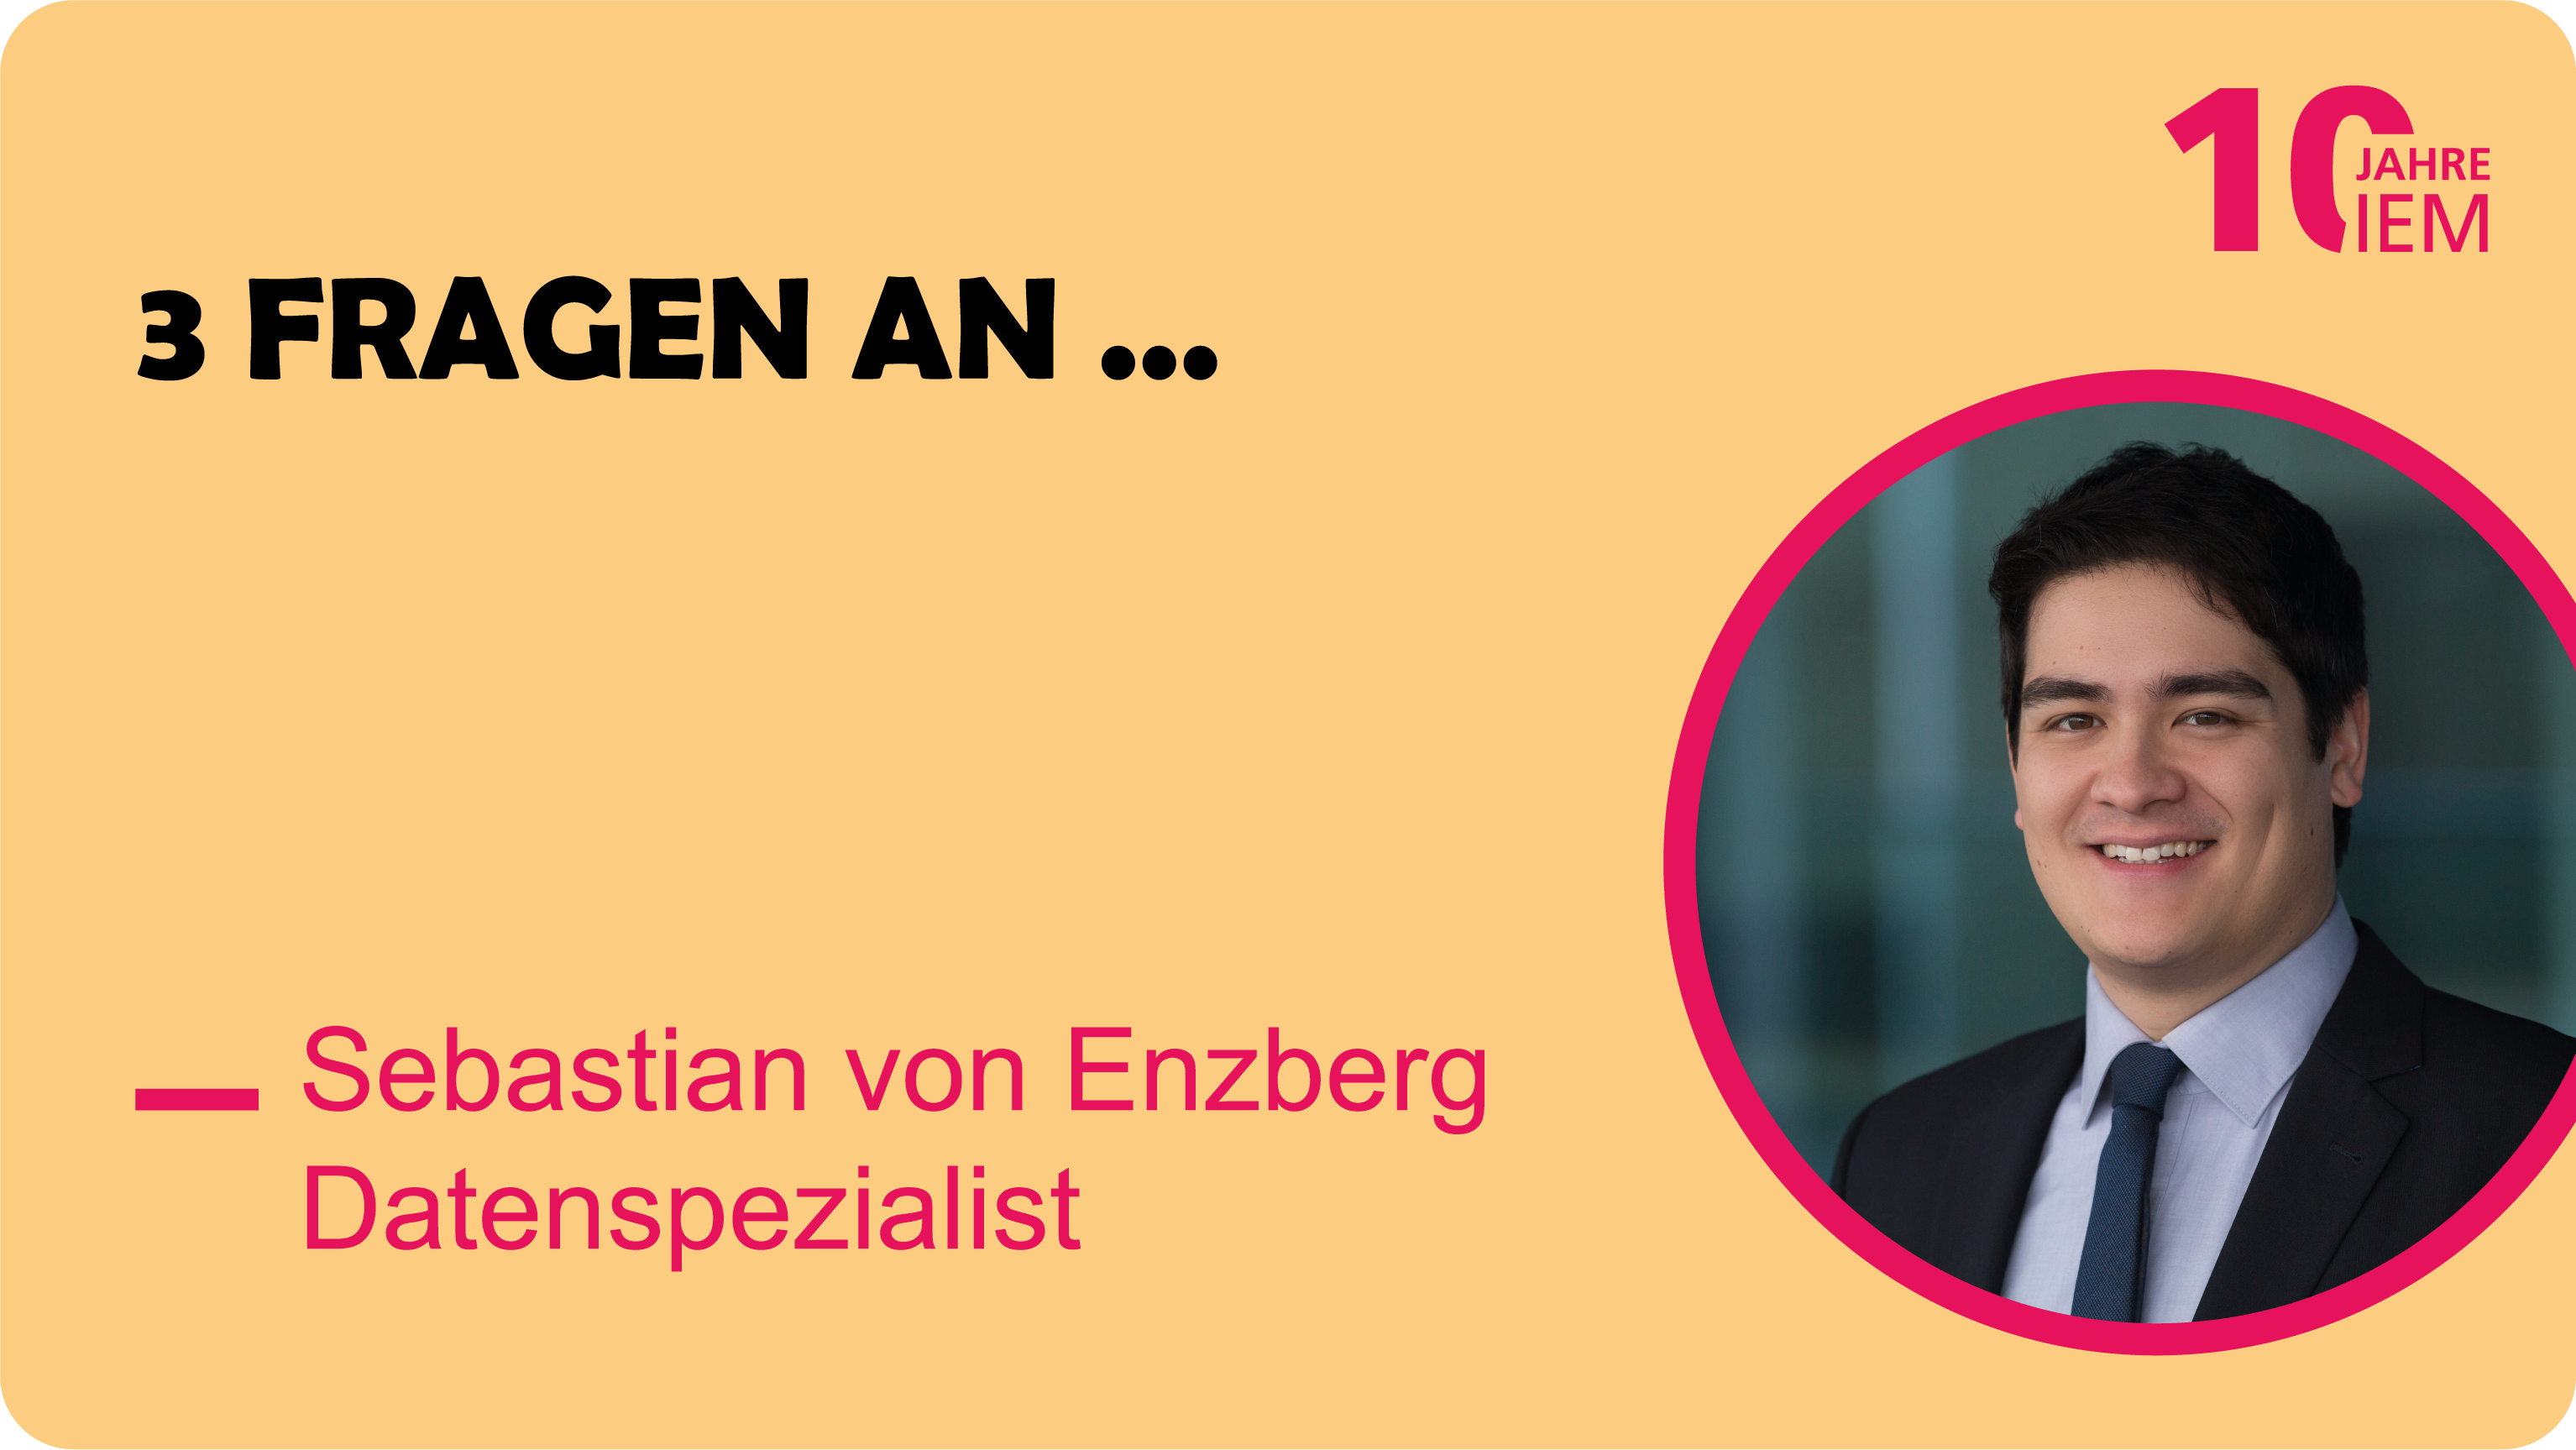 Portrait von Sebastian von Enzberg vor einem gelben Hintergrund. Links daneben steht die Überschrift "3 Fragen an.." mit entsprechendem Namen.